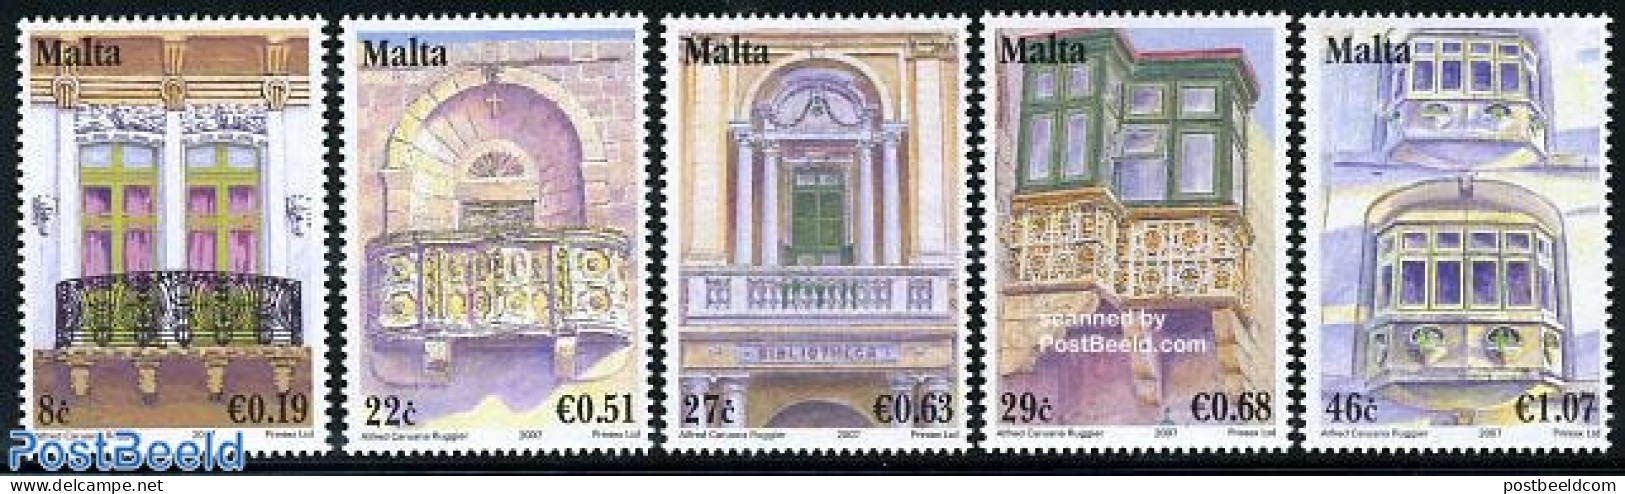 Malta 2007 Balcons 5v, Mint NH, Art - Architecture - Malta